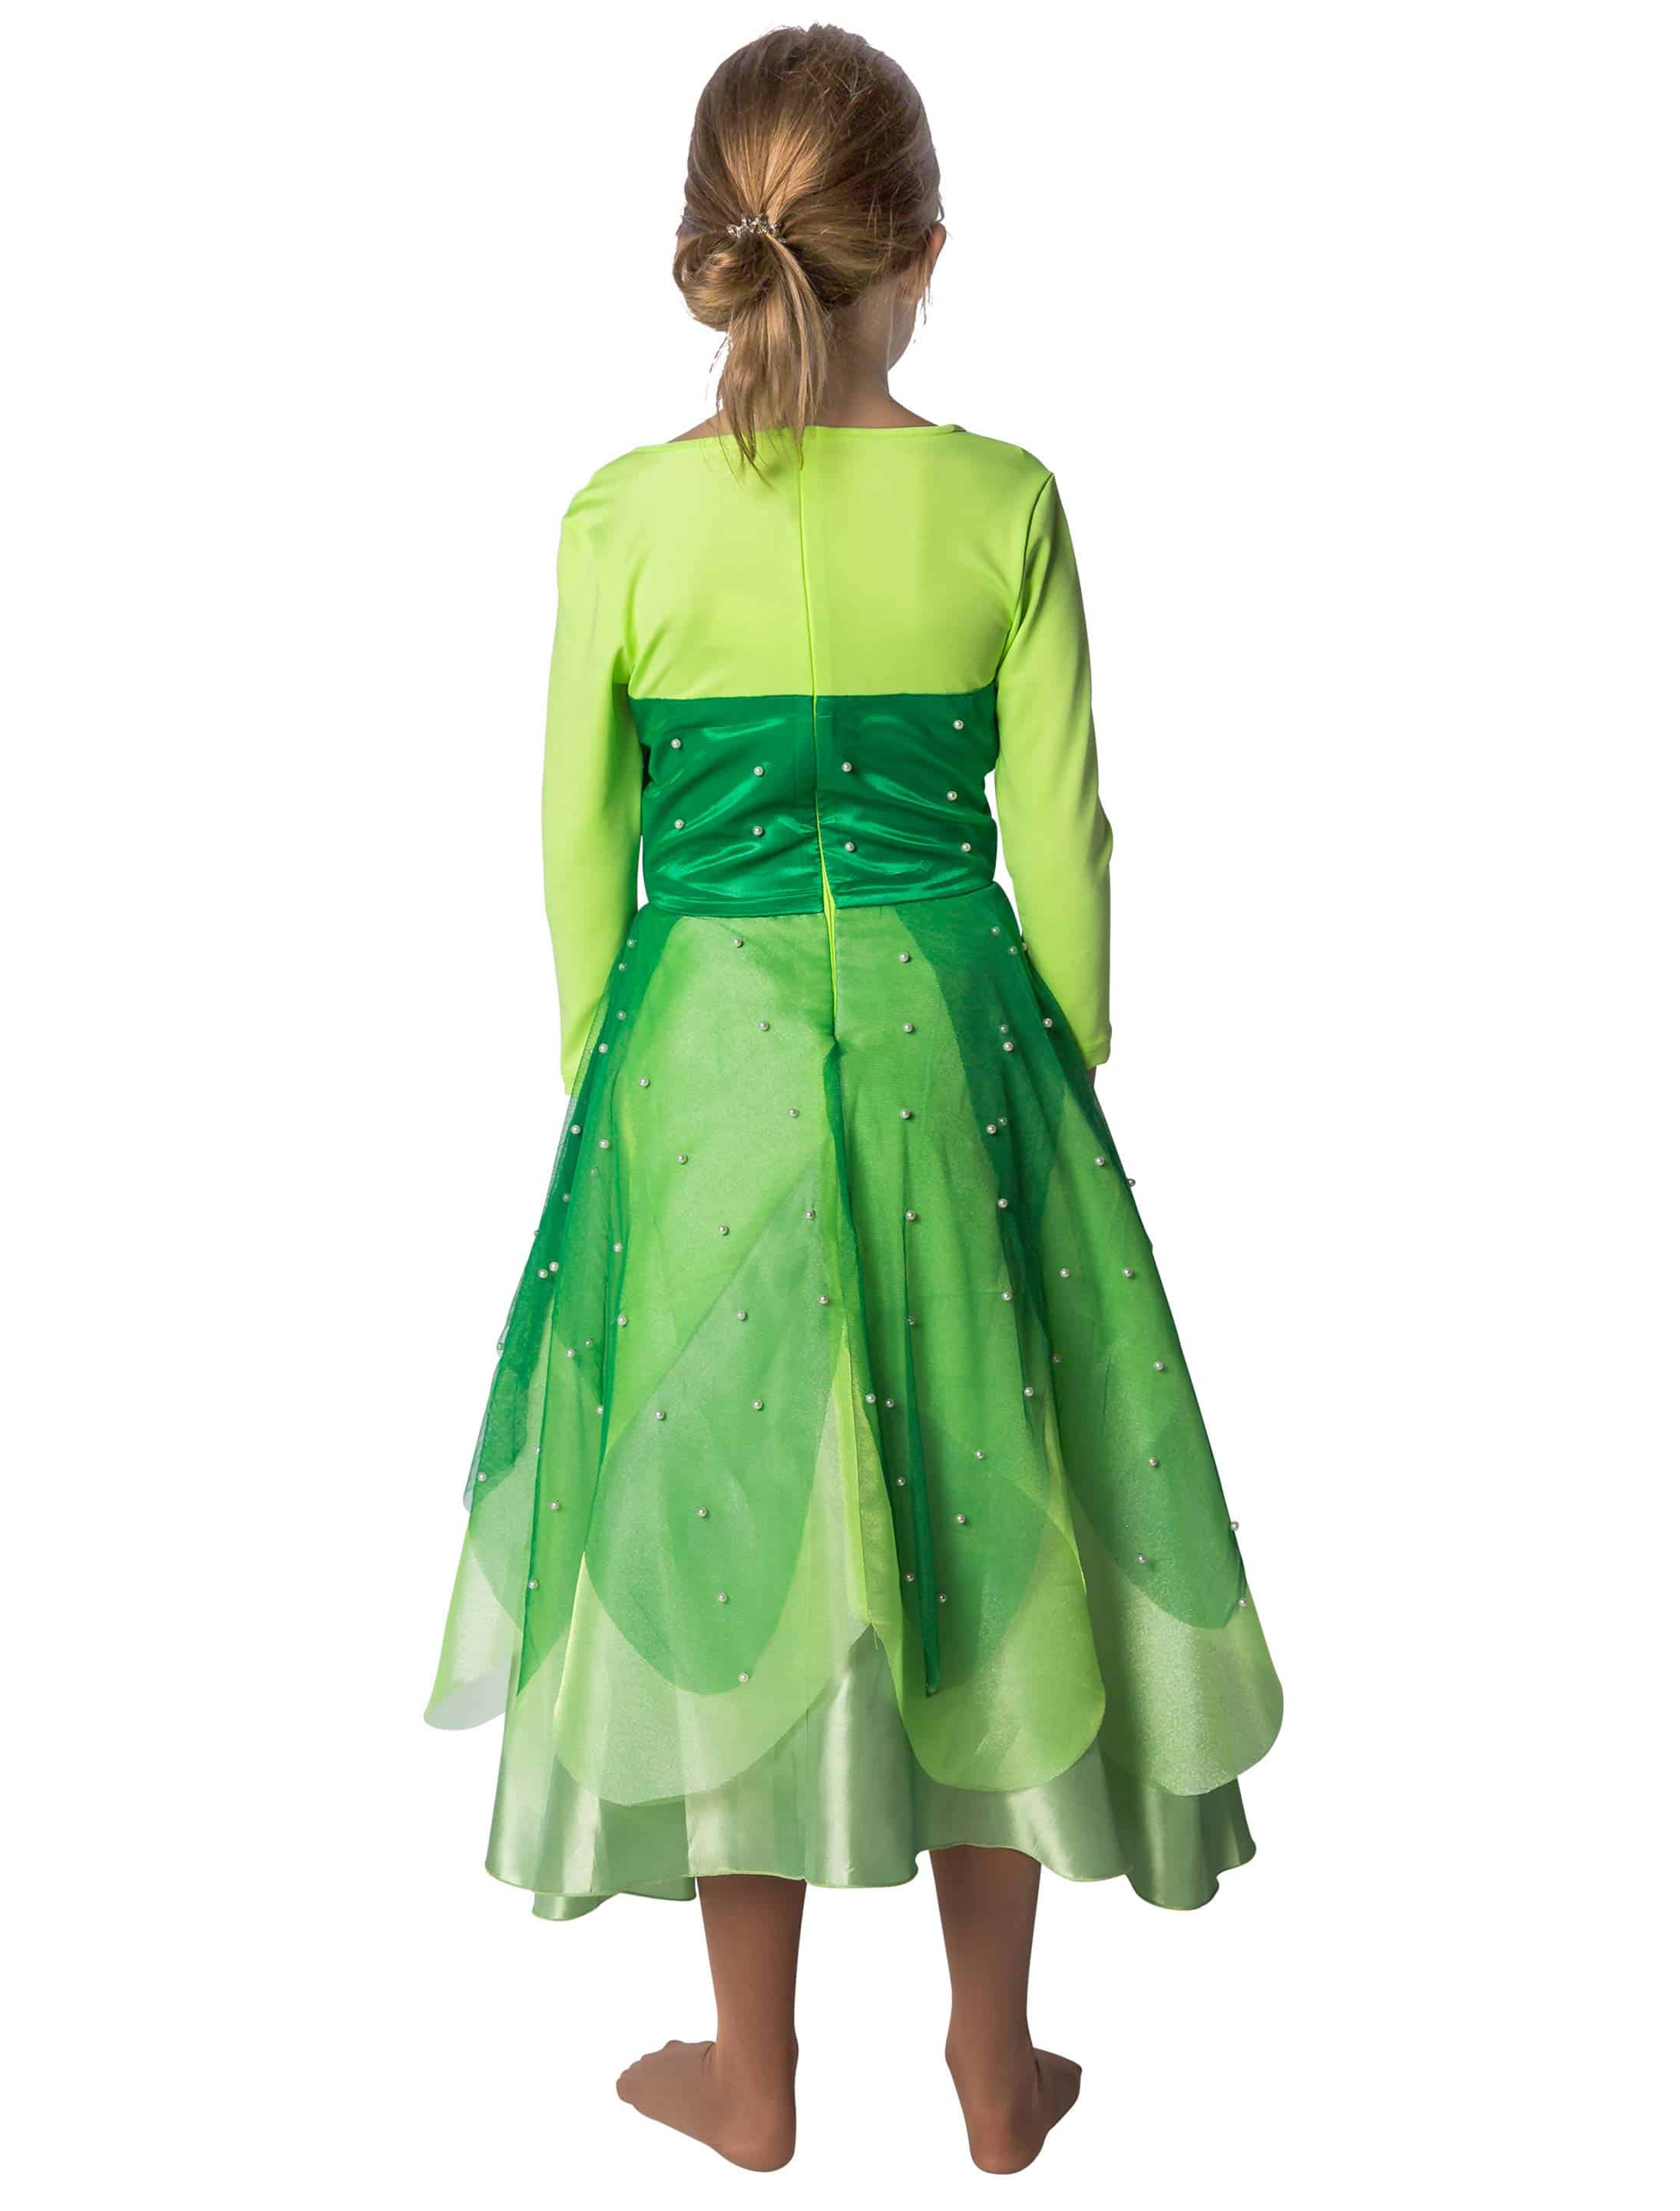 Kleid Froschkönigin Kinder grün 116